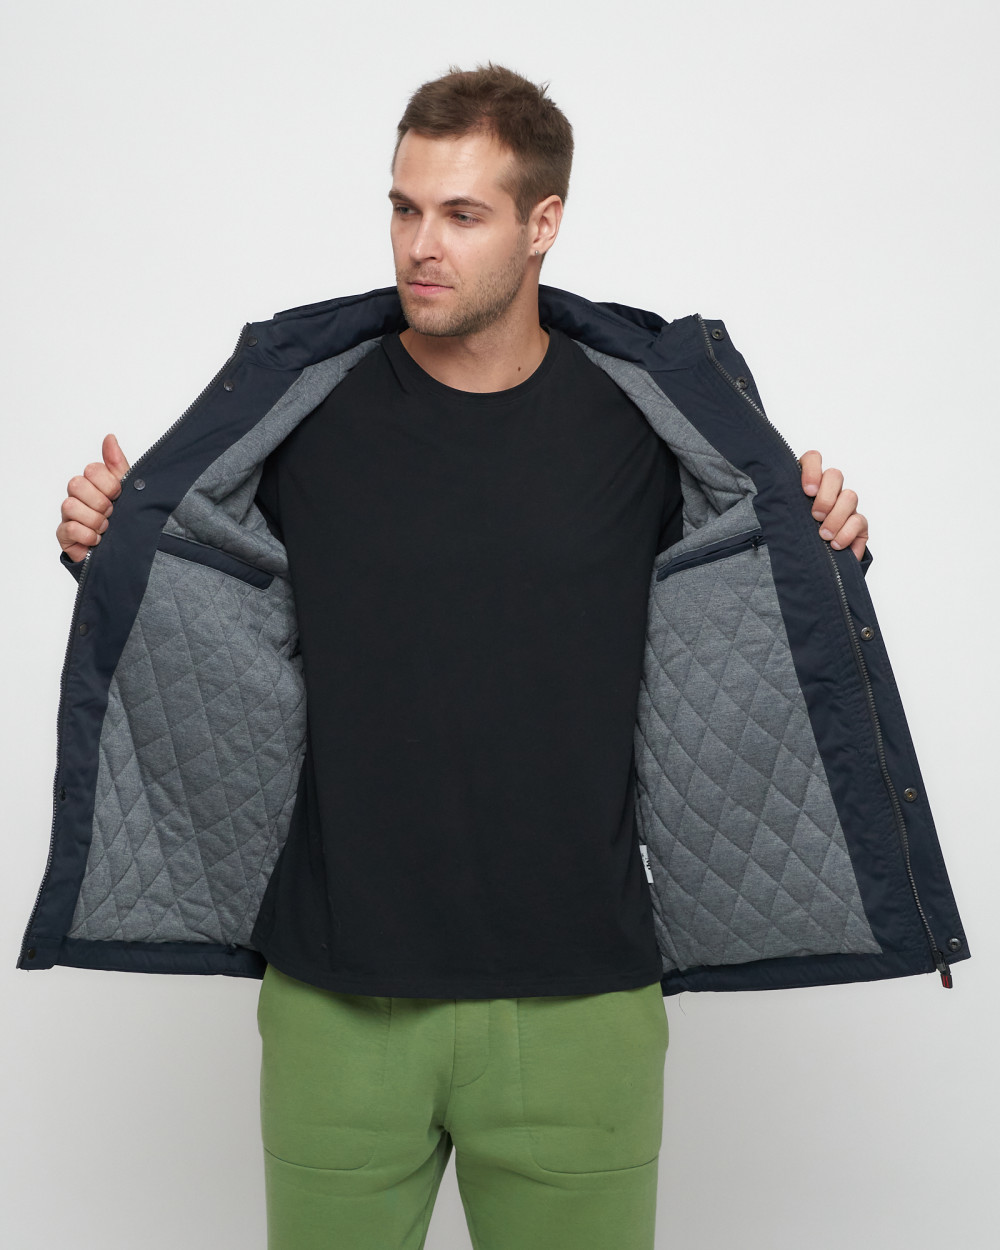 Купить куртку мужскую спортивную весеннюю оптом от производителя недорого в Москве 8596TS 1